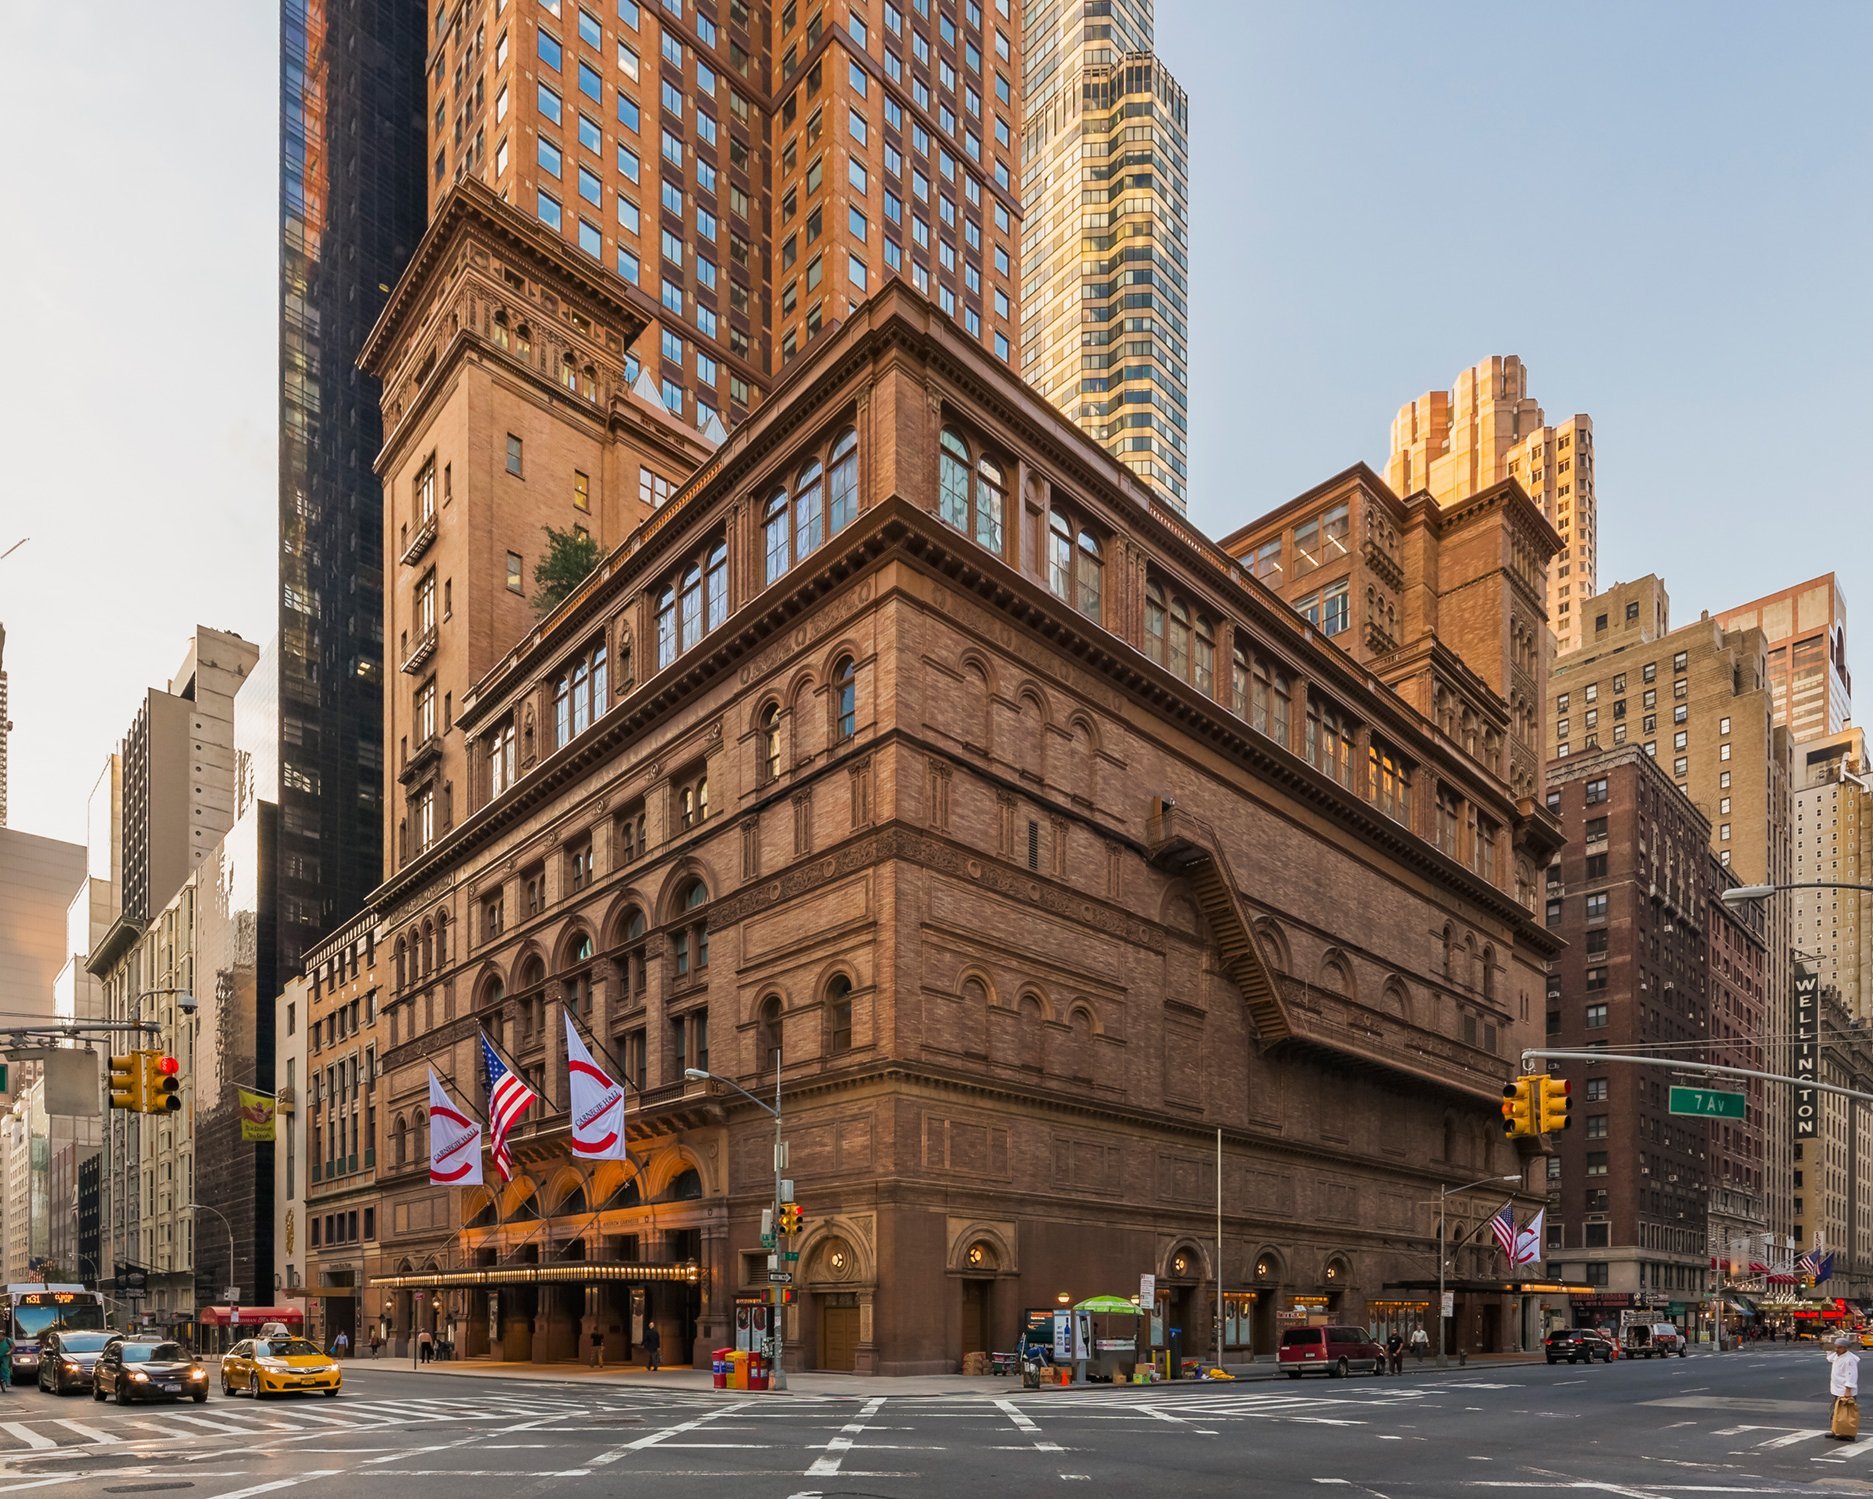 Fassade der Carnegie Hall in New York